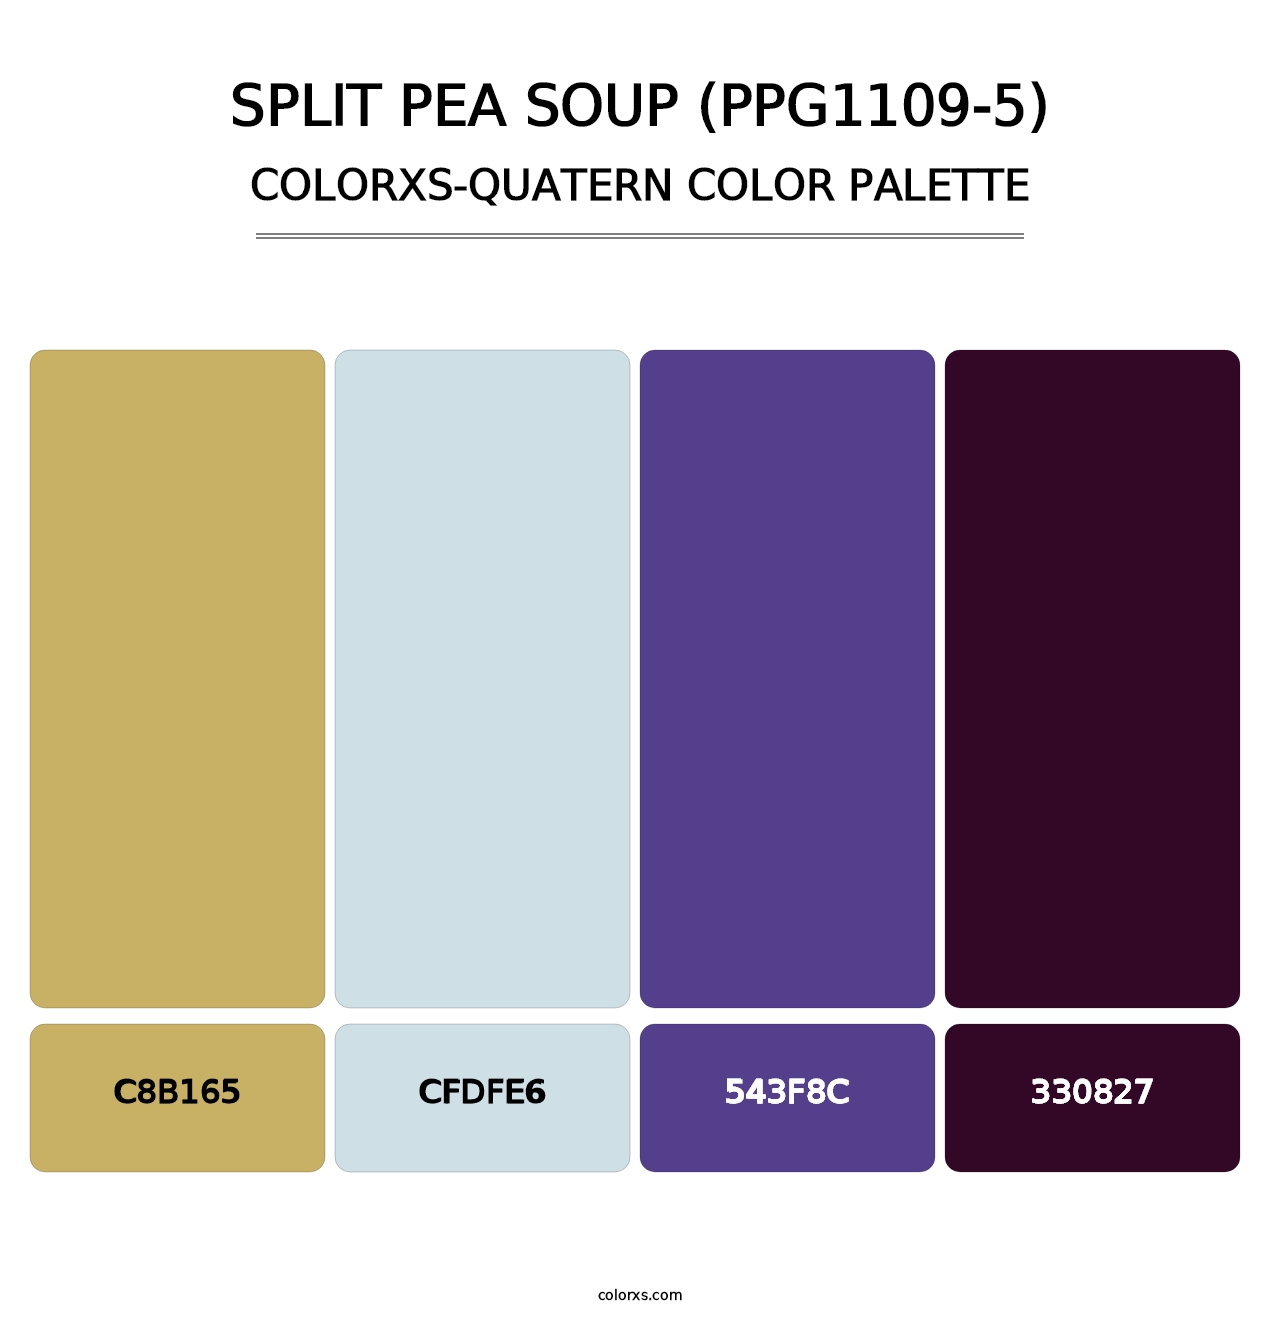 Split Pea Soup (PPG1109-5) - Colorxs Quatern Palette